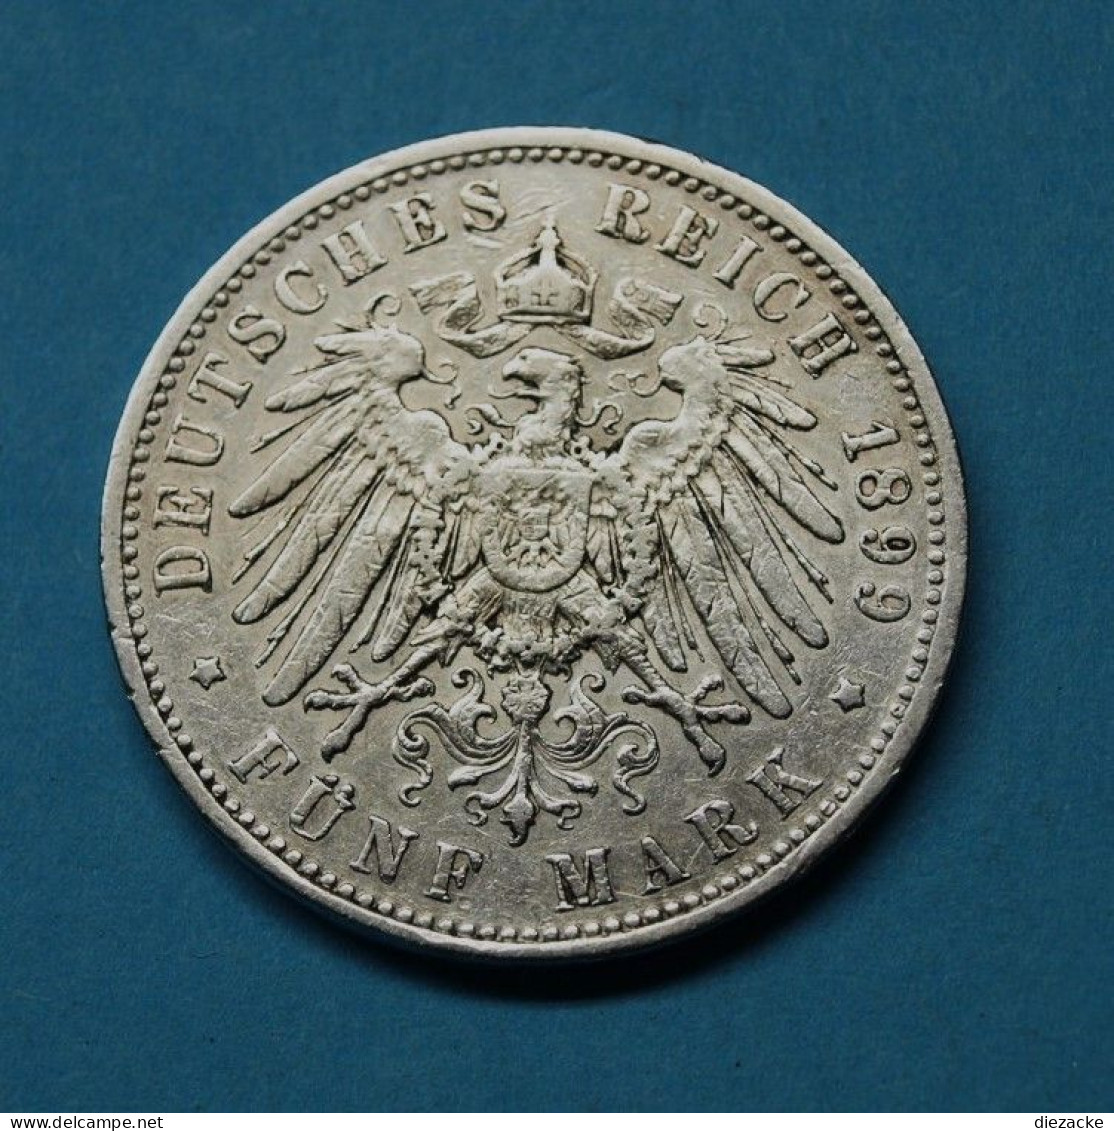 Preussen 1903 5 Mark Wilhelm II. (Fok5/3 - 2, 3 & 5 Mark Silver